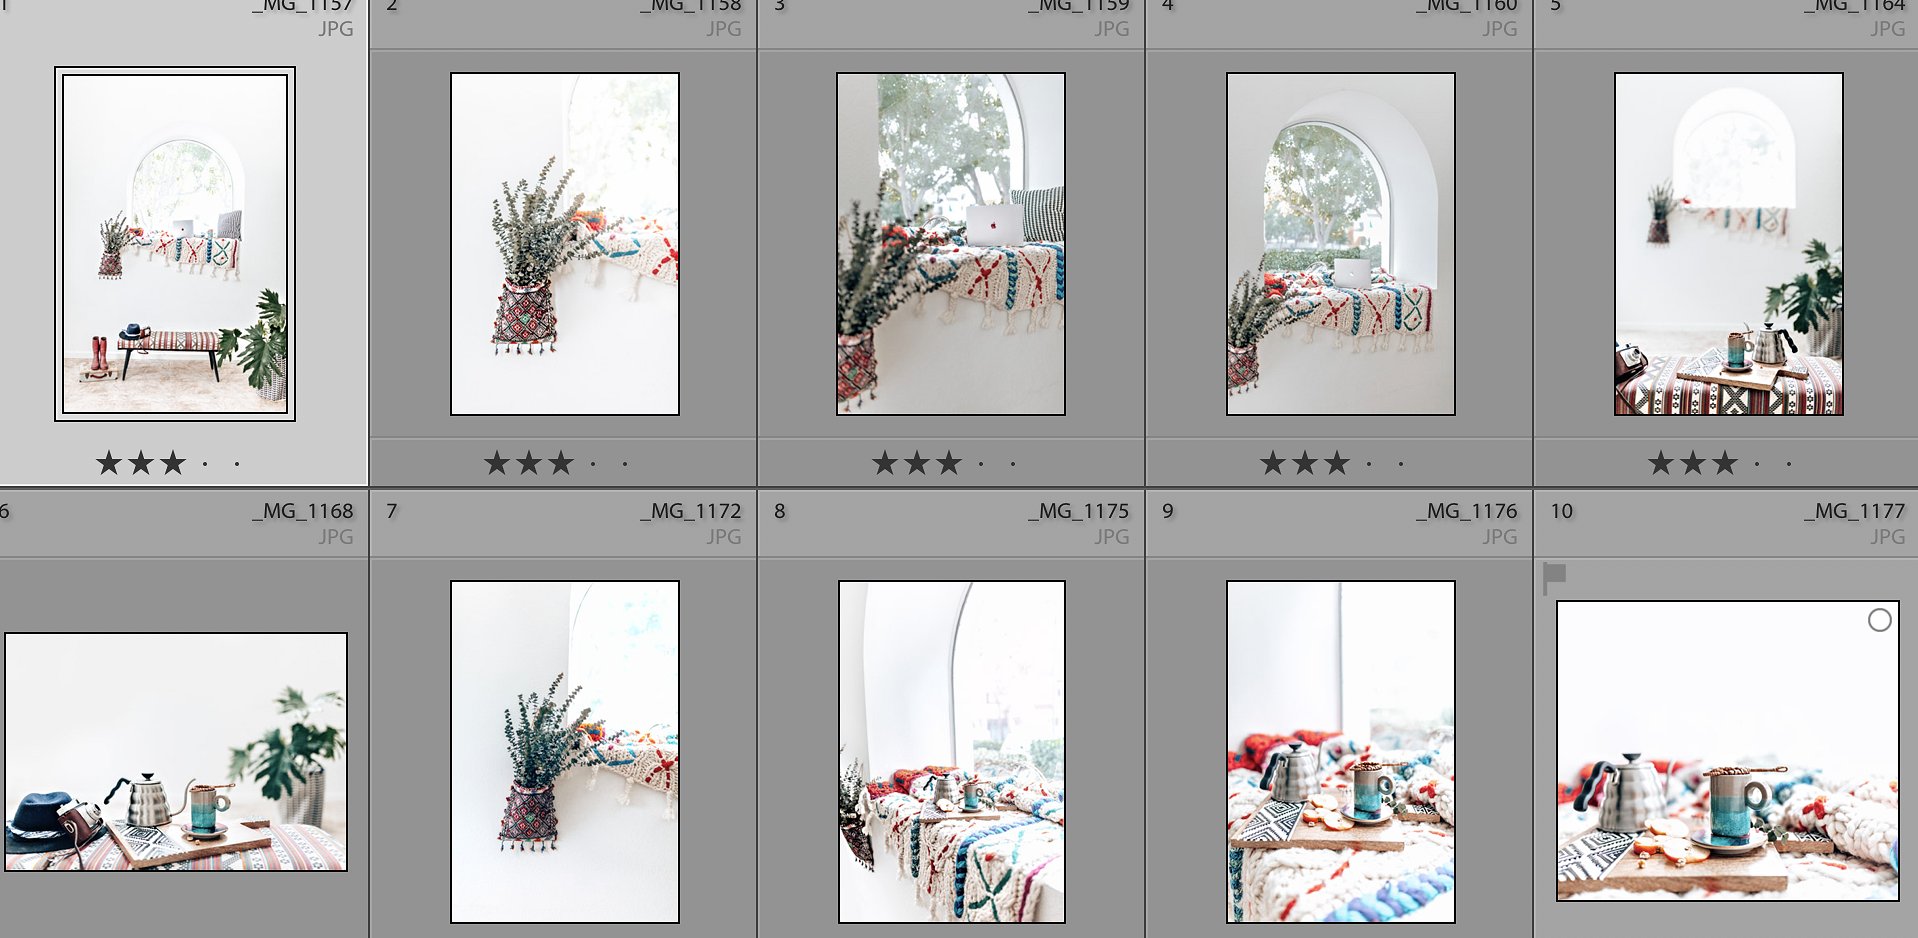 30张高分辨率的万花筒生活照片 30 Kaleidoscope Lifestyle Photo Bundle插图3